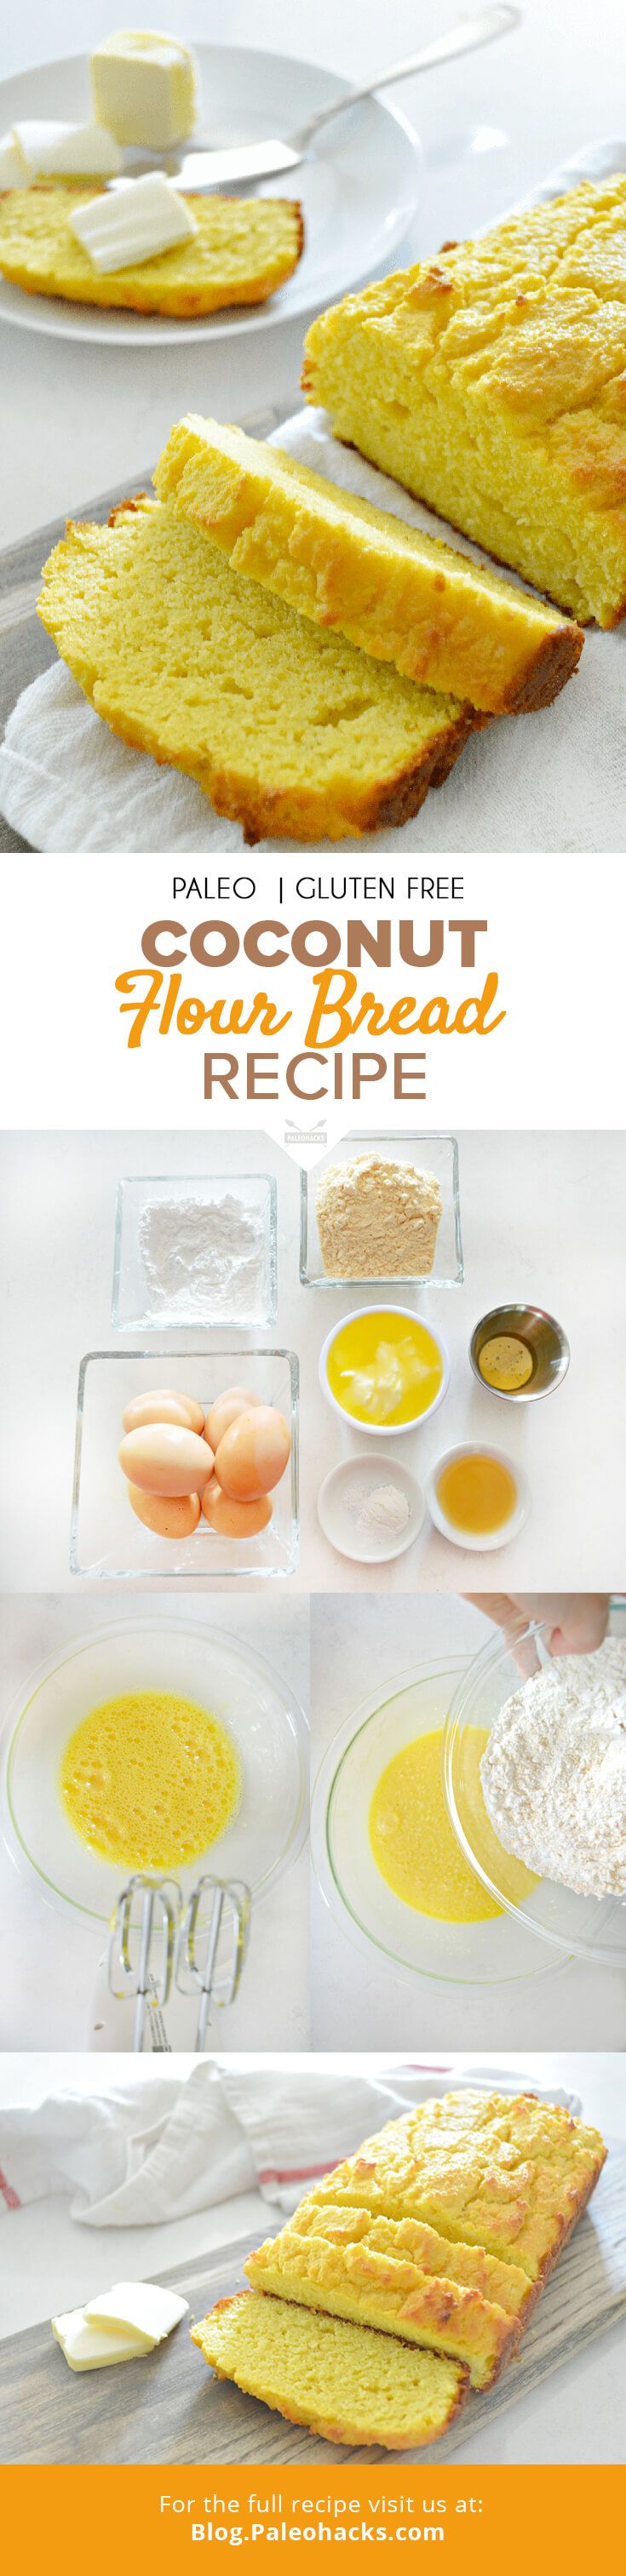 pin-coconut-flour-bread-recipe